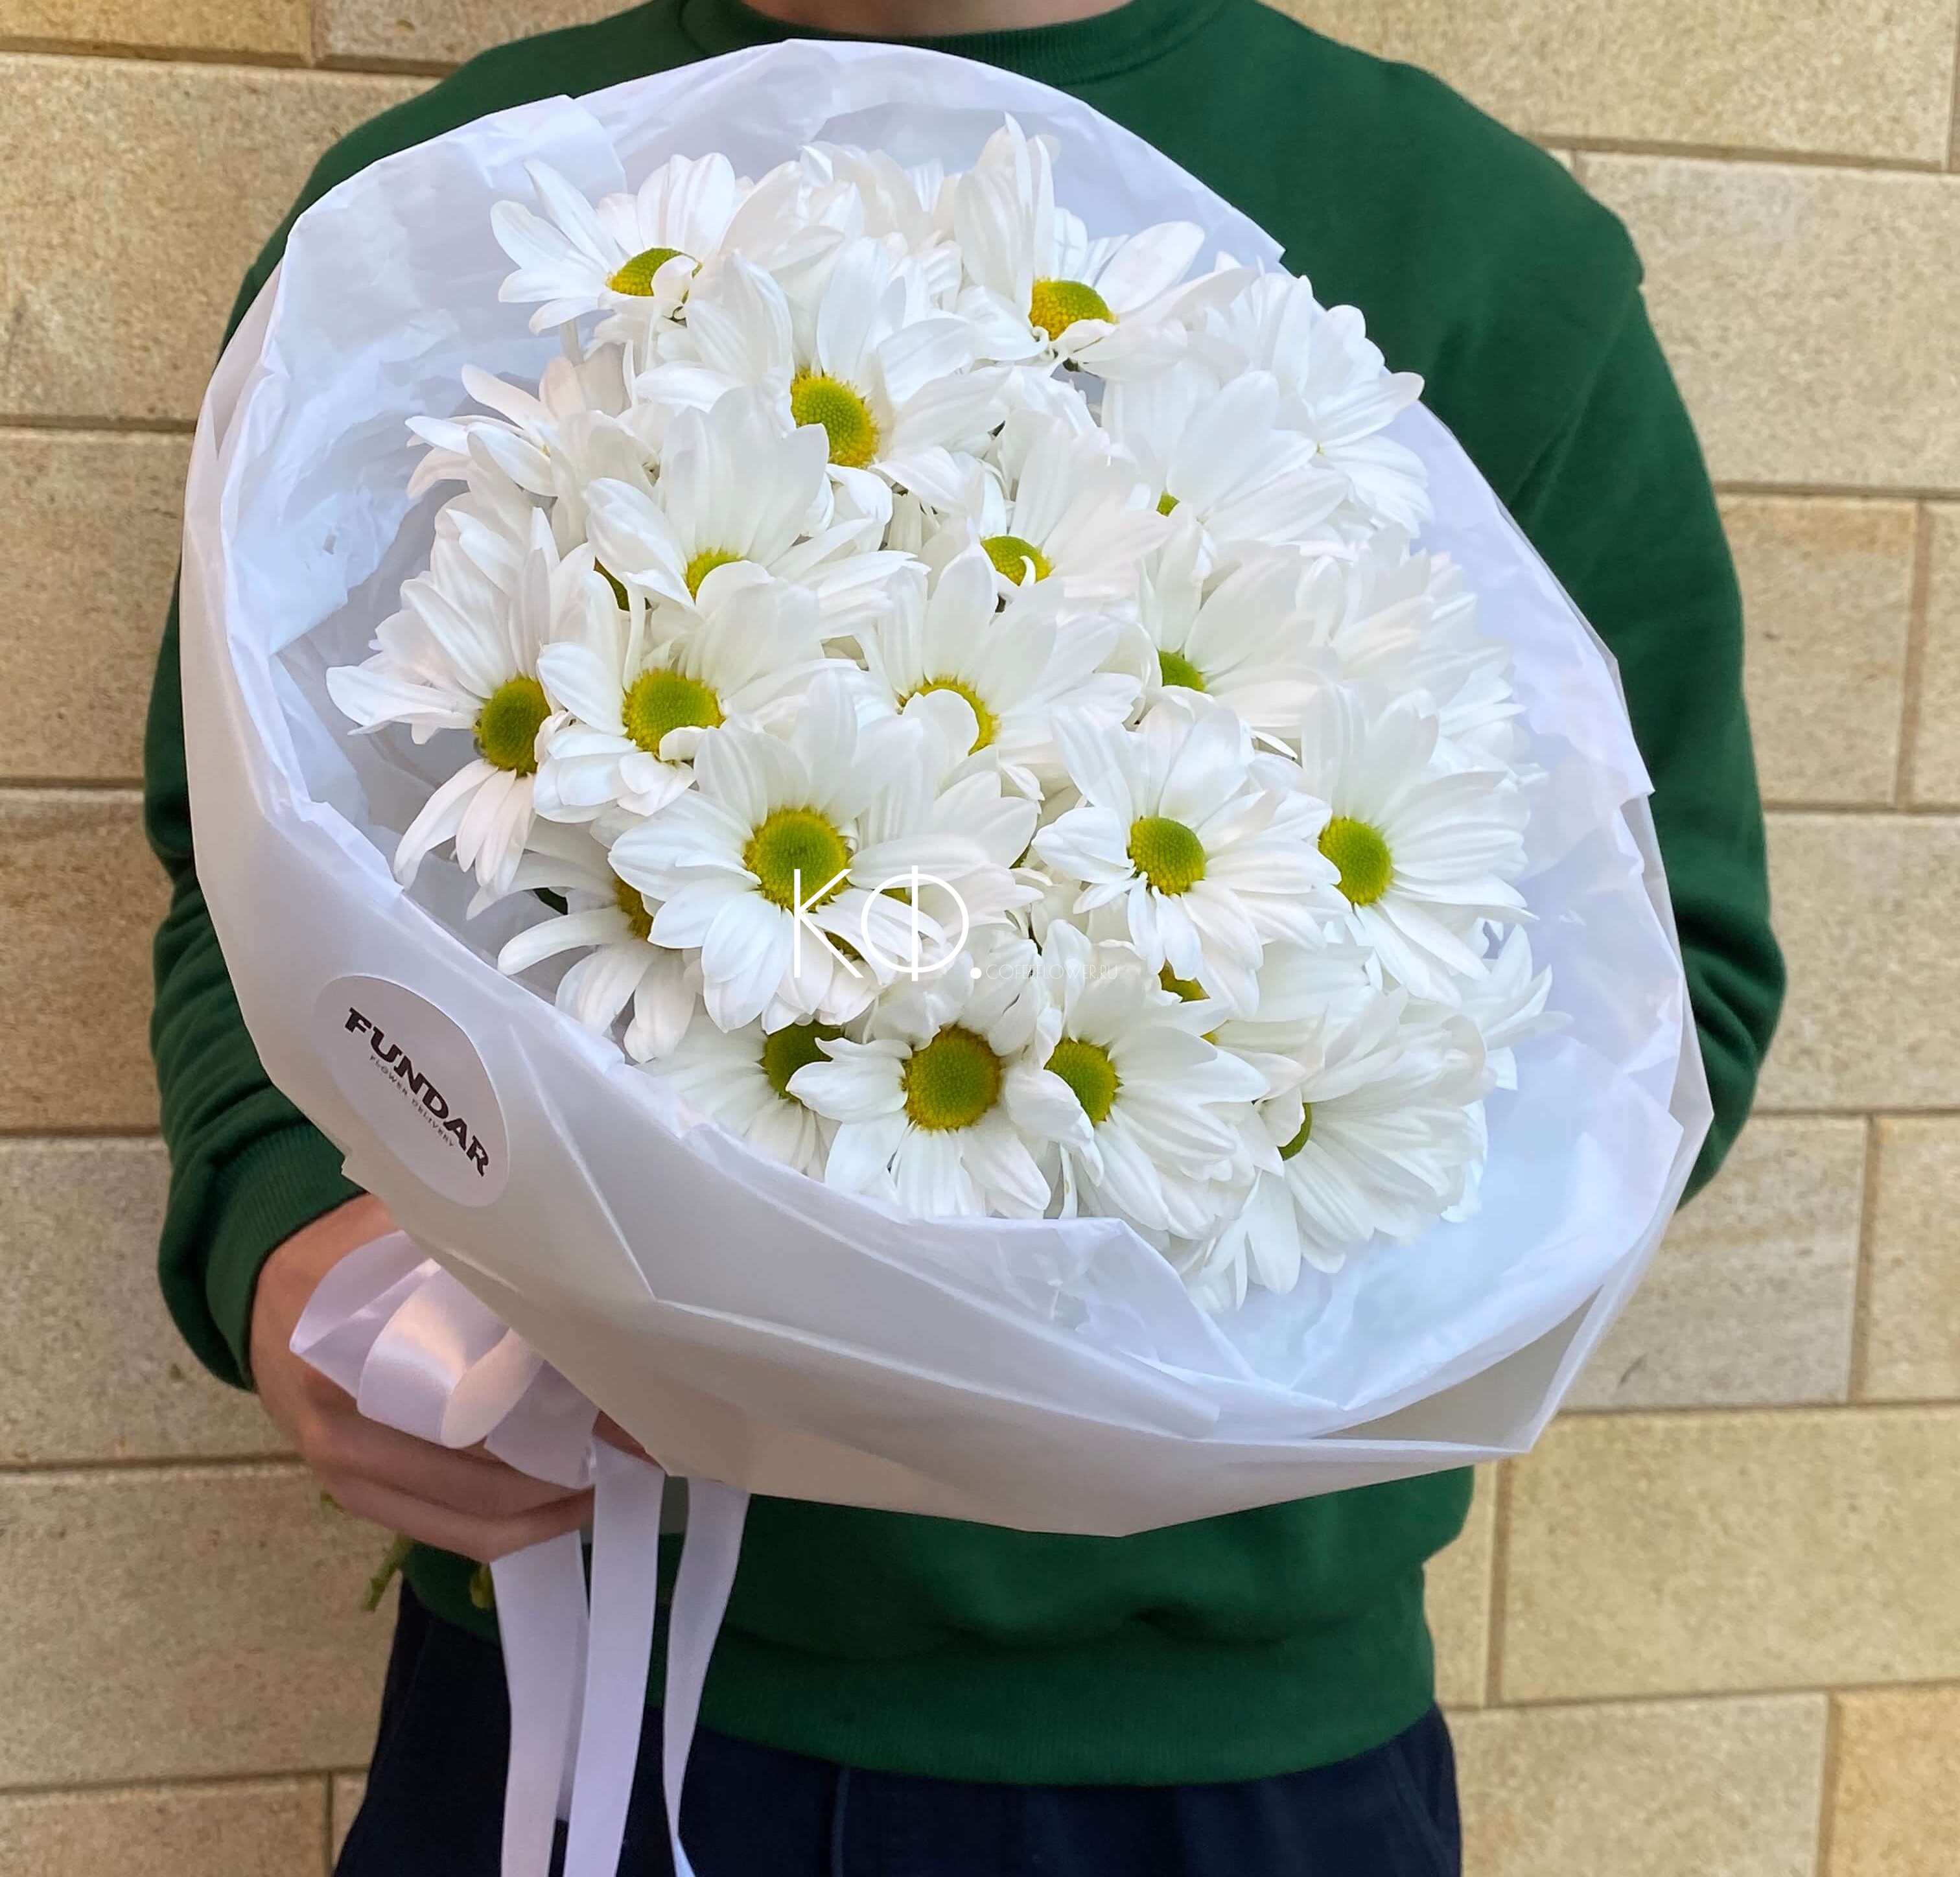 День рождения учителя – цветы в подарок